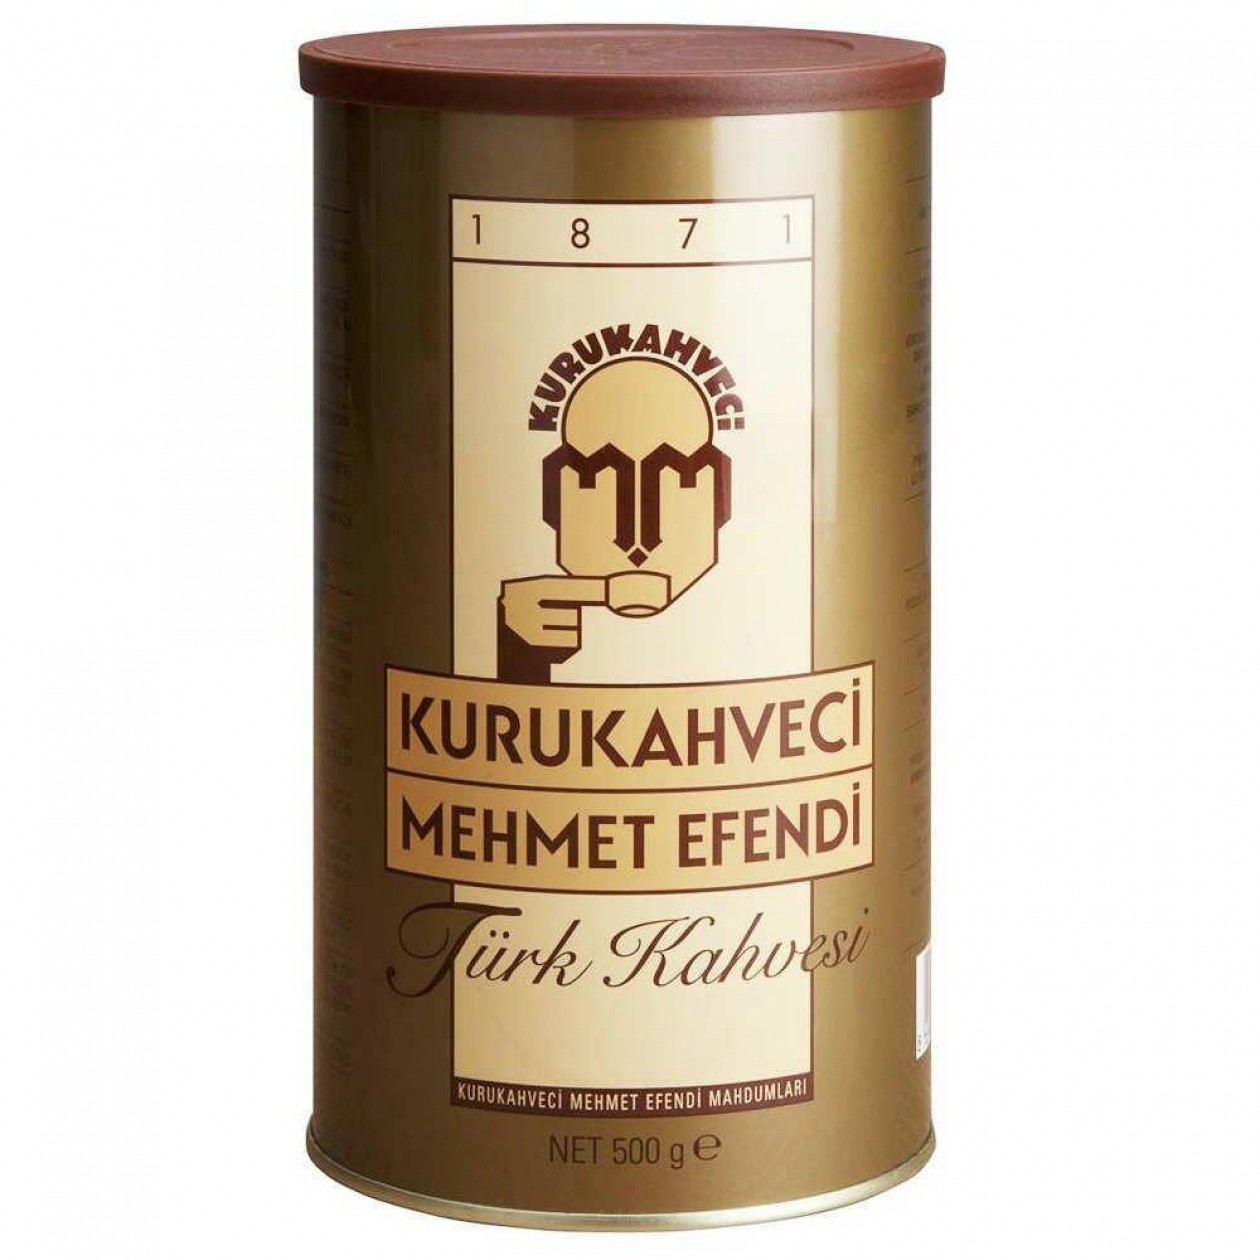 Kuru Kahveci Mehmet Efendi Turkish Coffee 500g